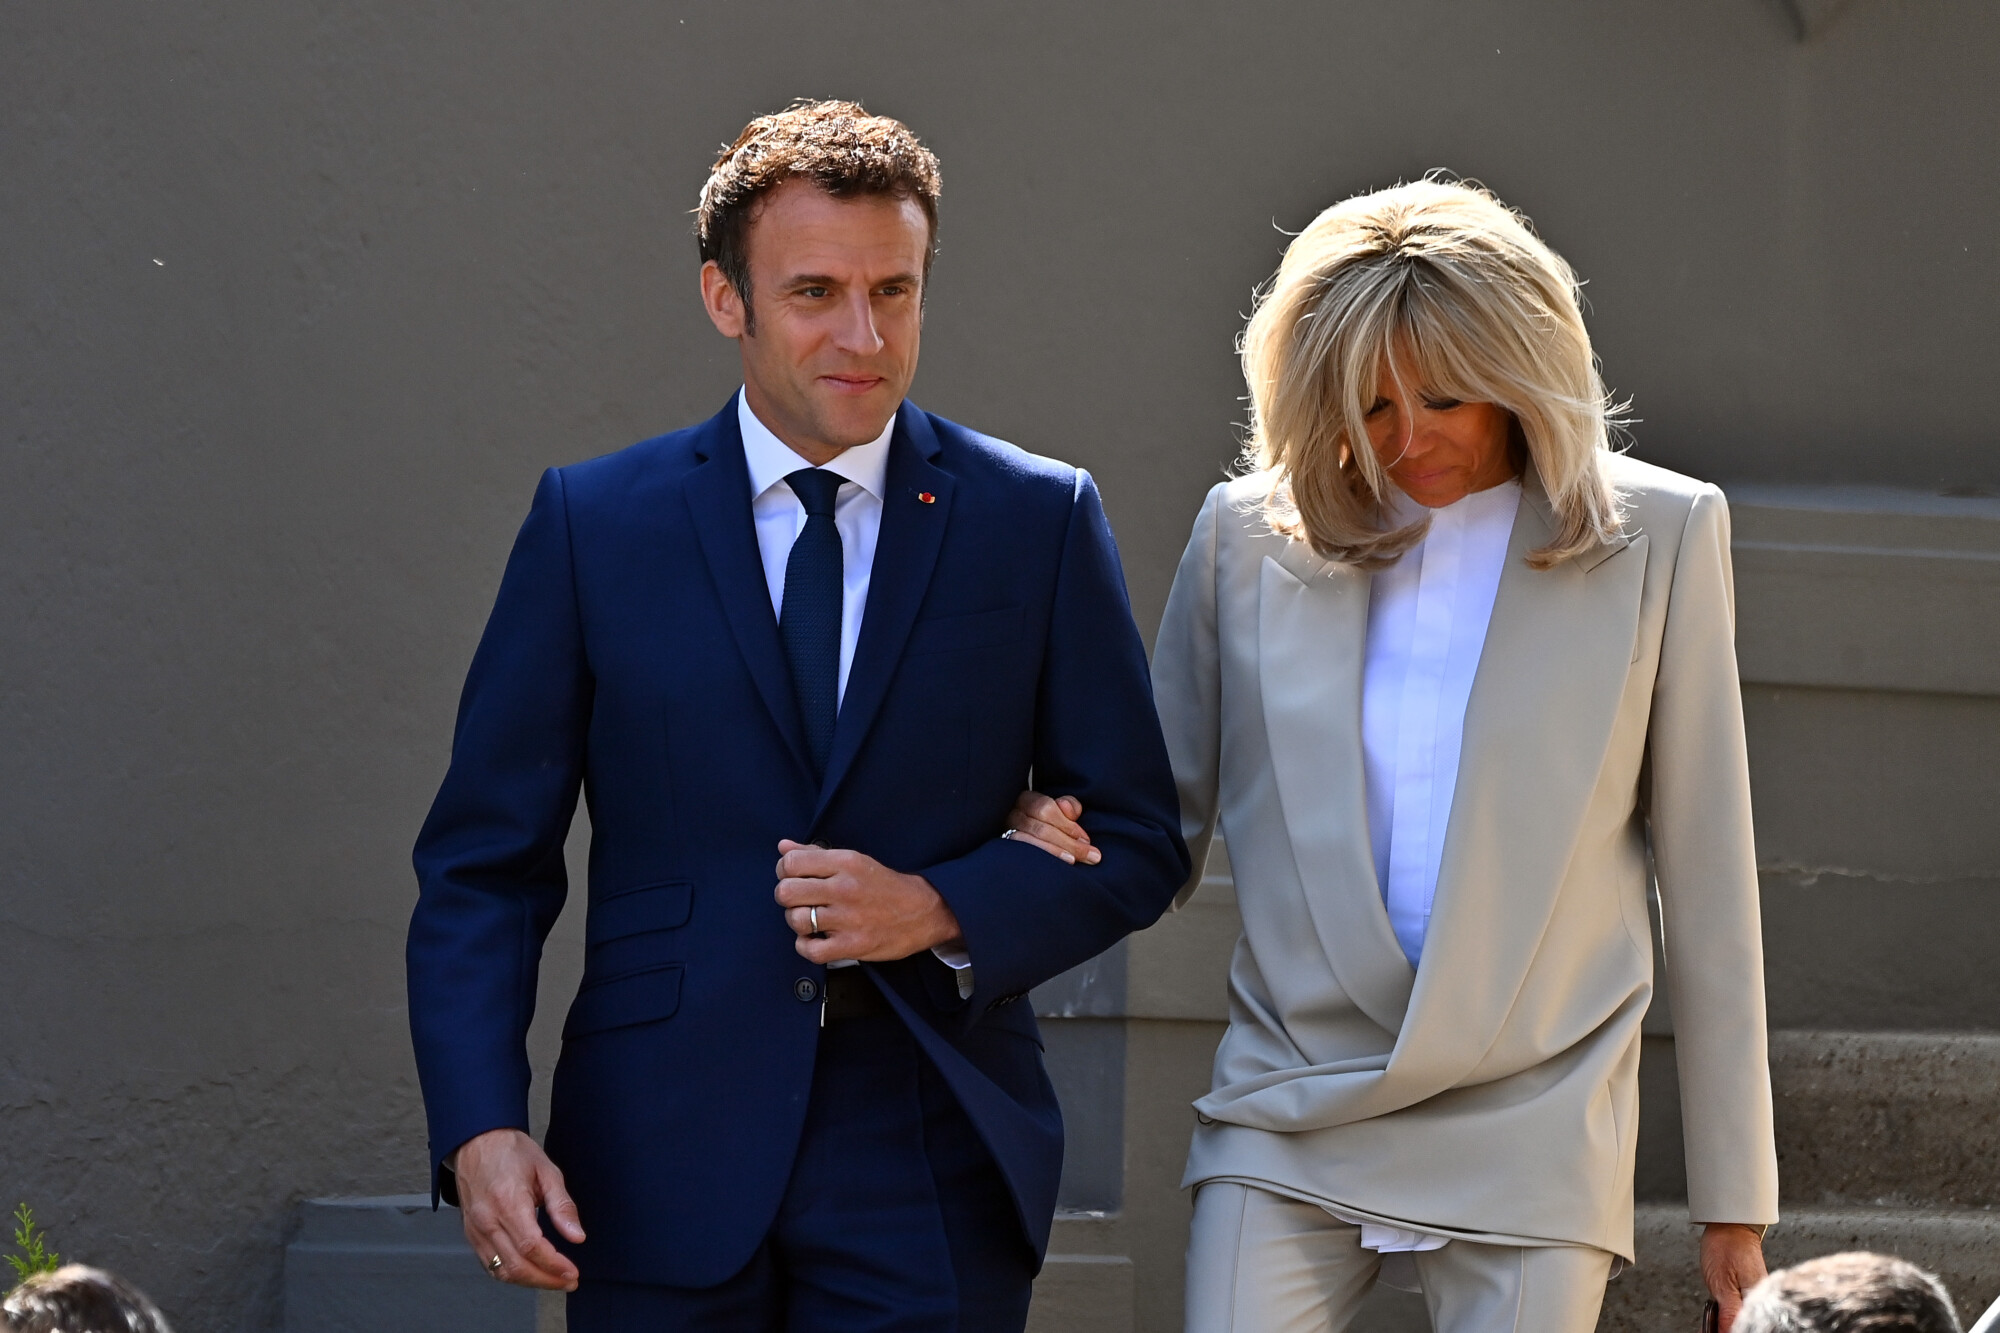 Harris, Blinken Host Luncheon for French President Macron